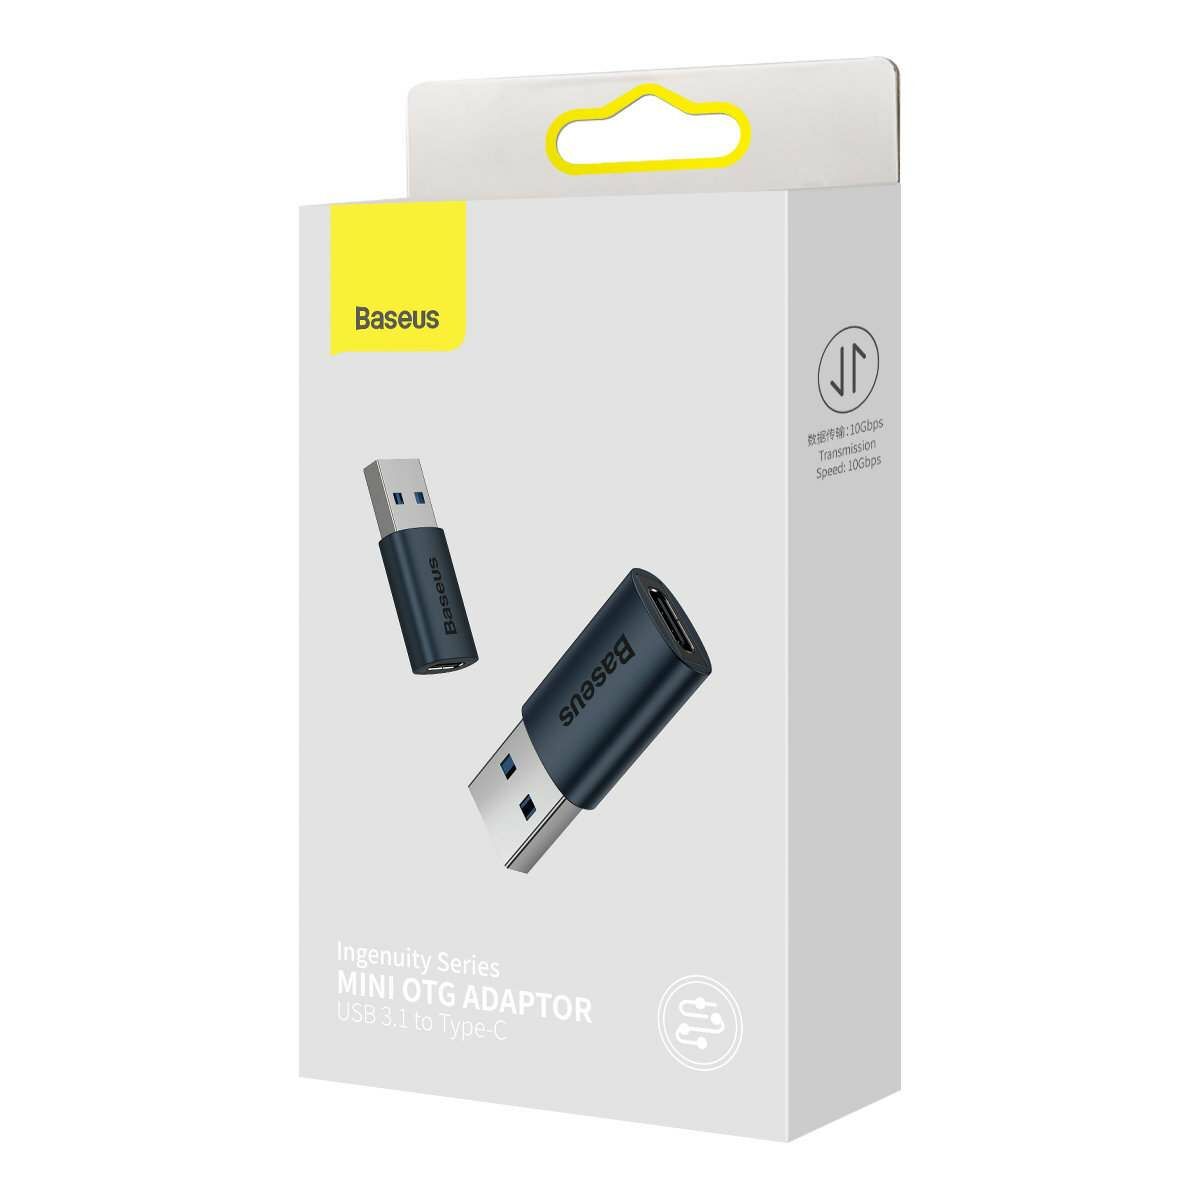 Kép 5/6 - Baseus Ingenuity Series Mini OTG adapter, USB-A 3.1-USB-C, kék (ZJJQ000103)